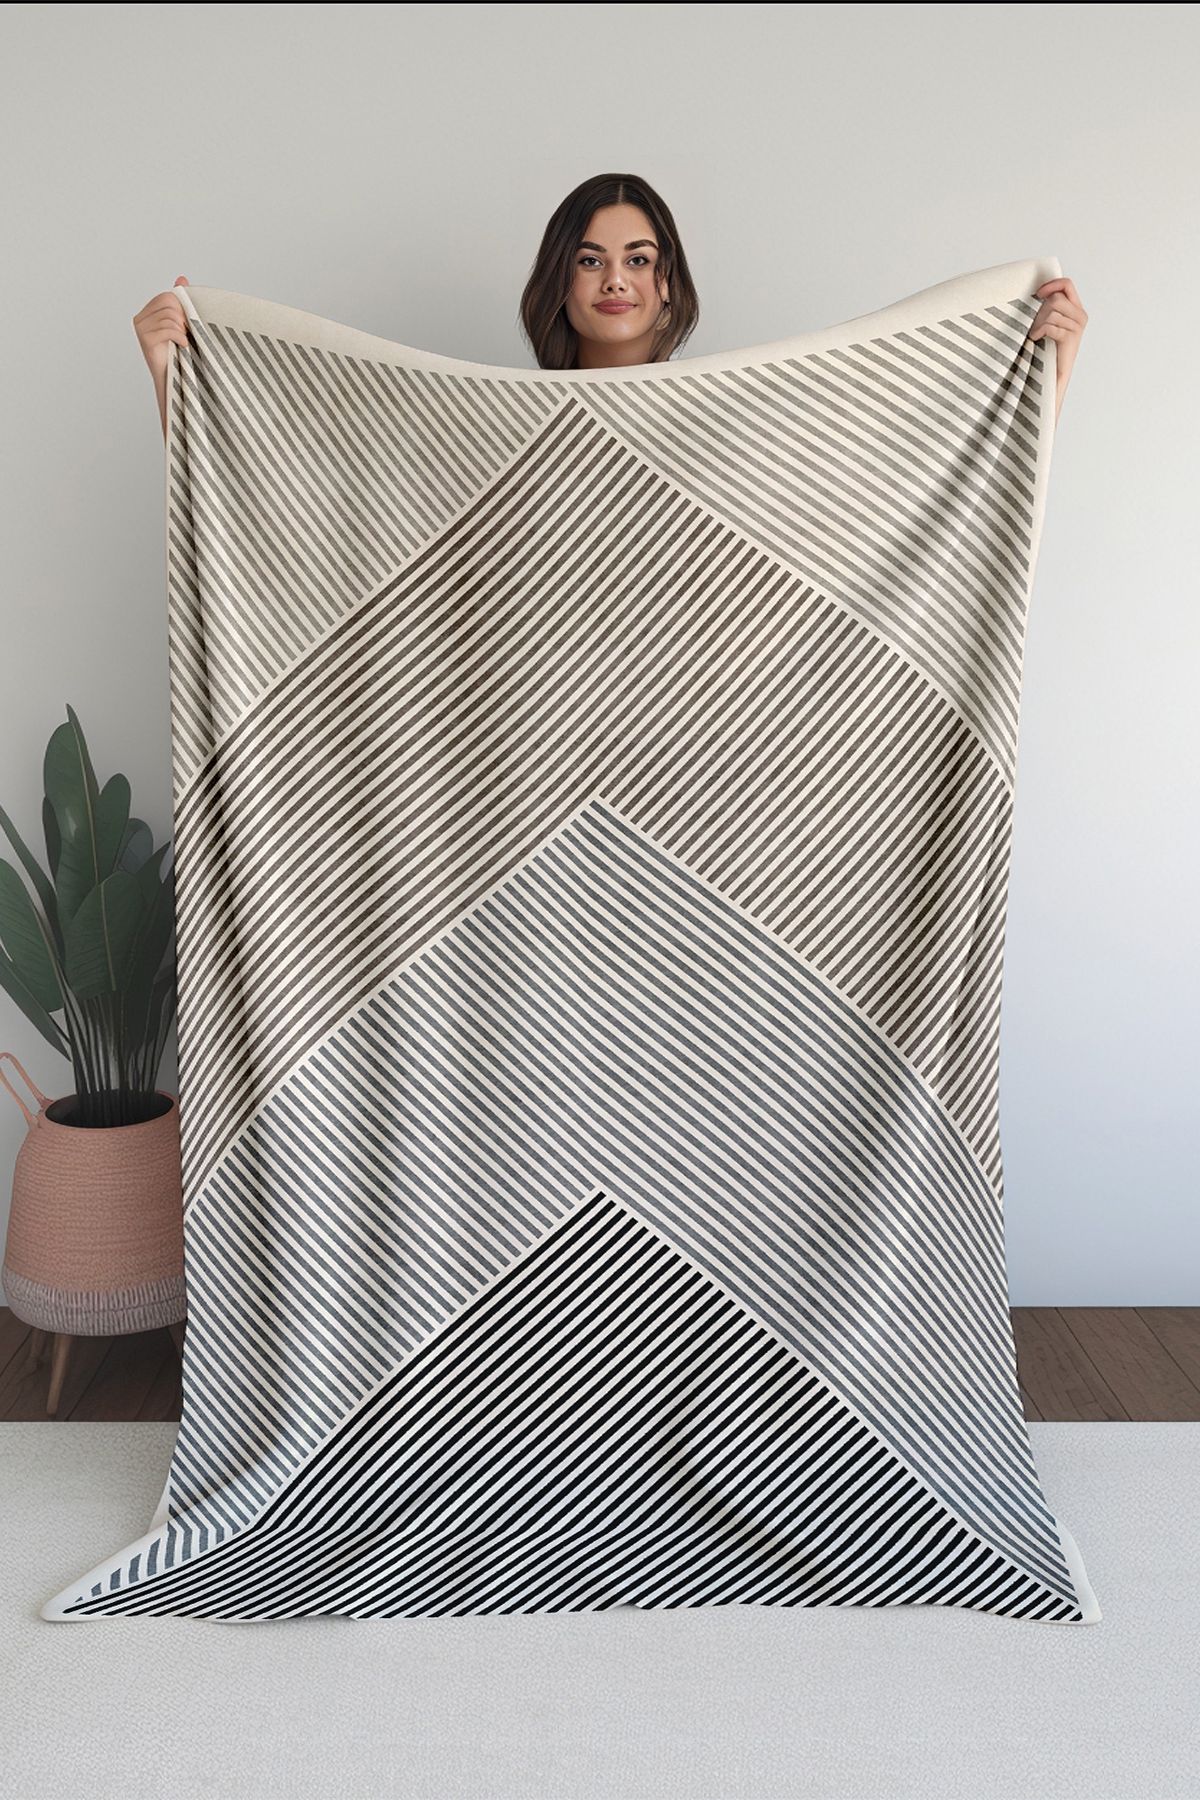 Homefesto Baskılı Polar Krem Battaniye Tv Battaniyesi Makinede Yıkanabilir Battaniye Blanket055